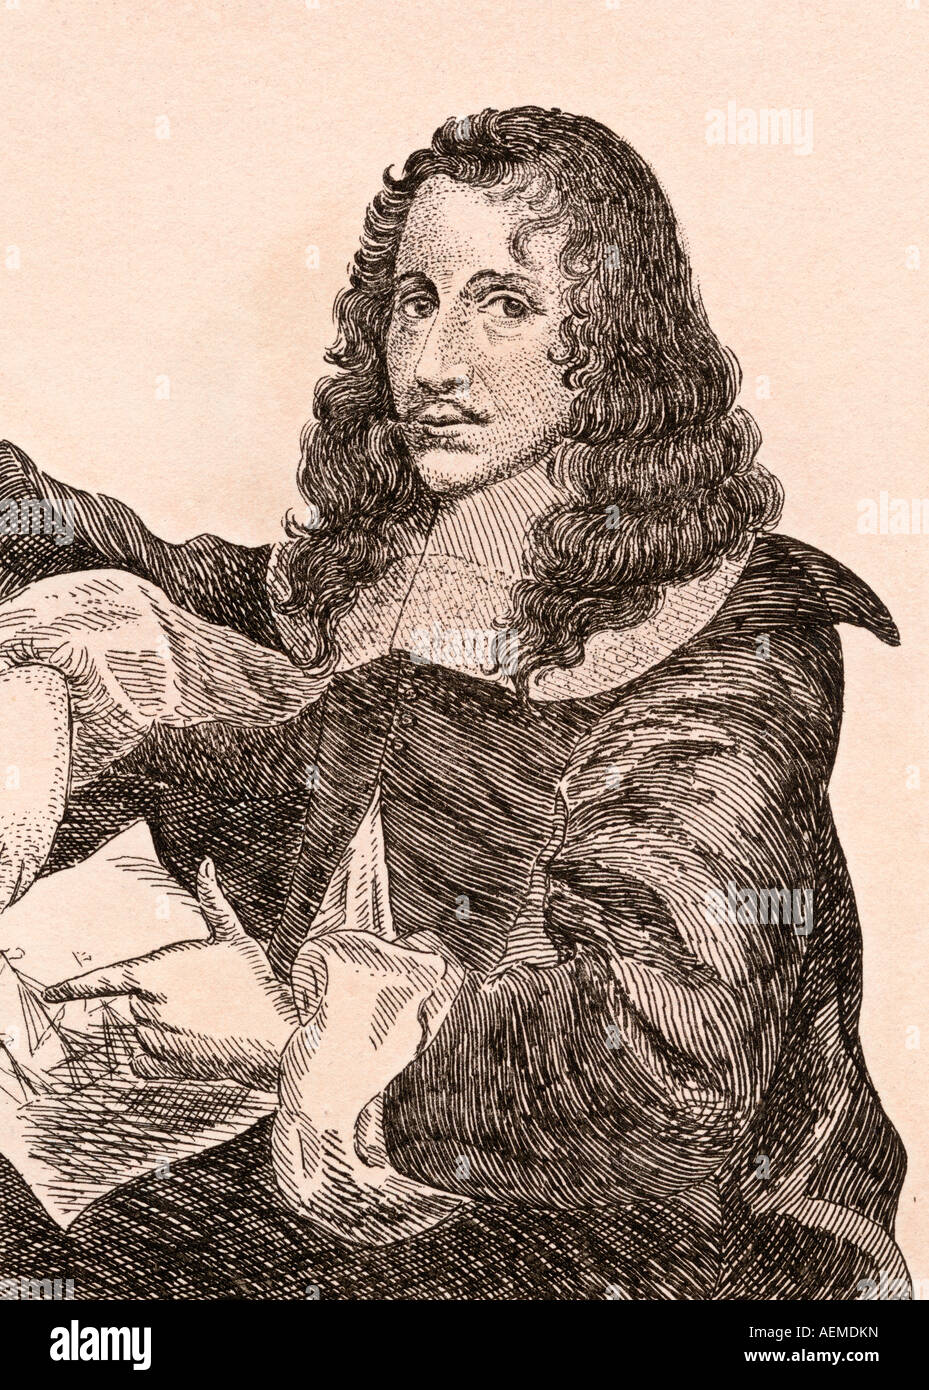 Bonaventura Peeters (I) oder Bonaventura Peeters the Elder, 1614 –1652. Flämischer Maler, Zeichner und Radierer. Stockfoto